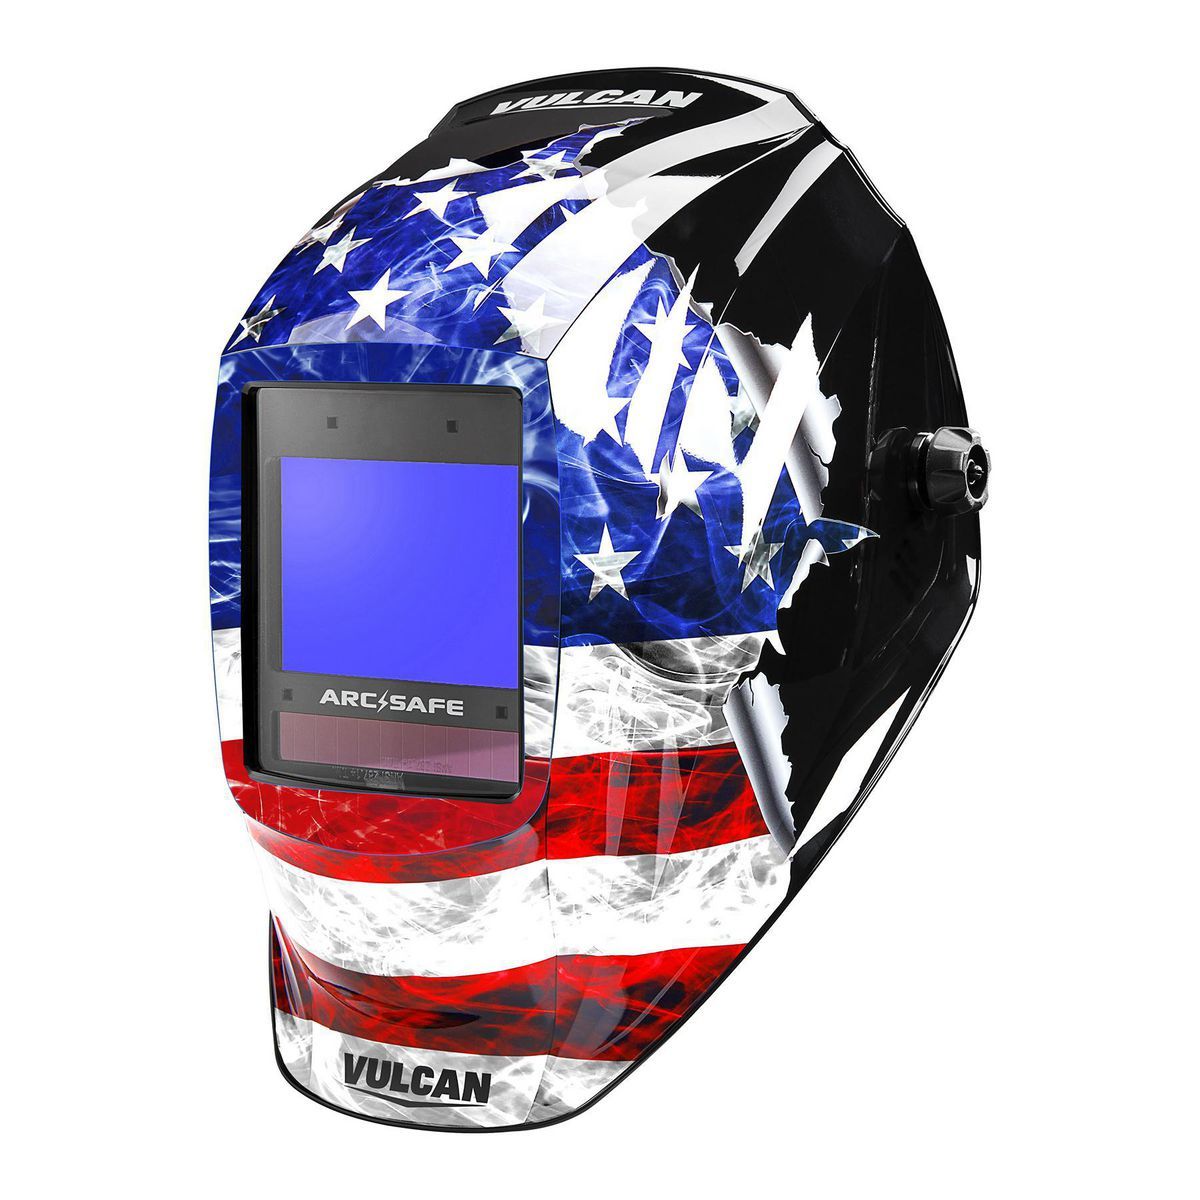 10.1 sq. in. ARCSAFE Auto-Darkening Welding Helmet with American Flag Design